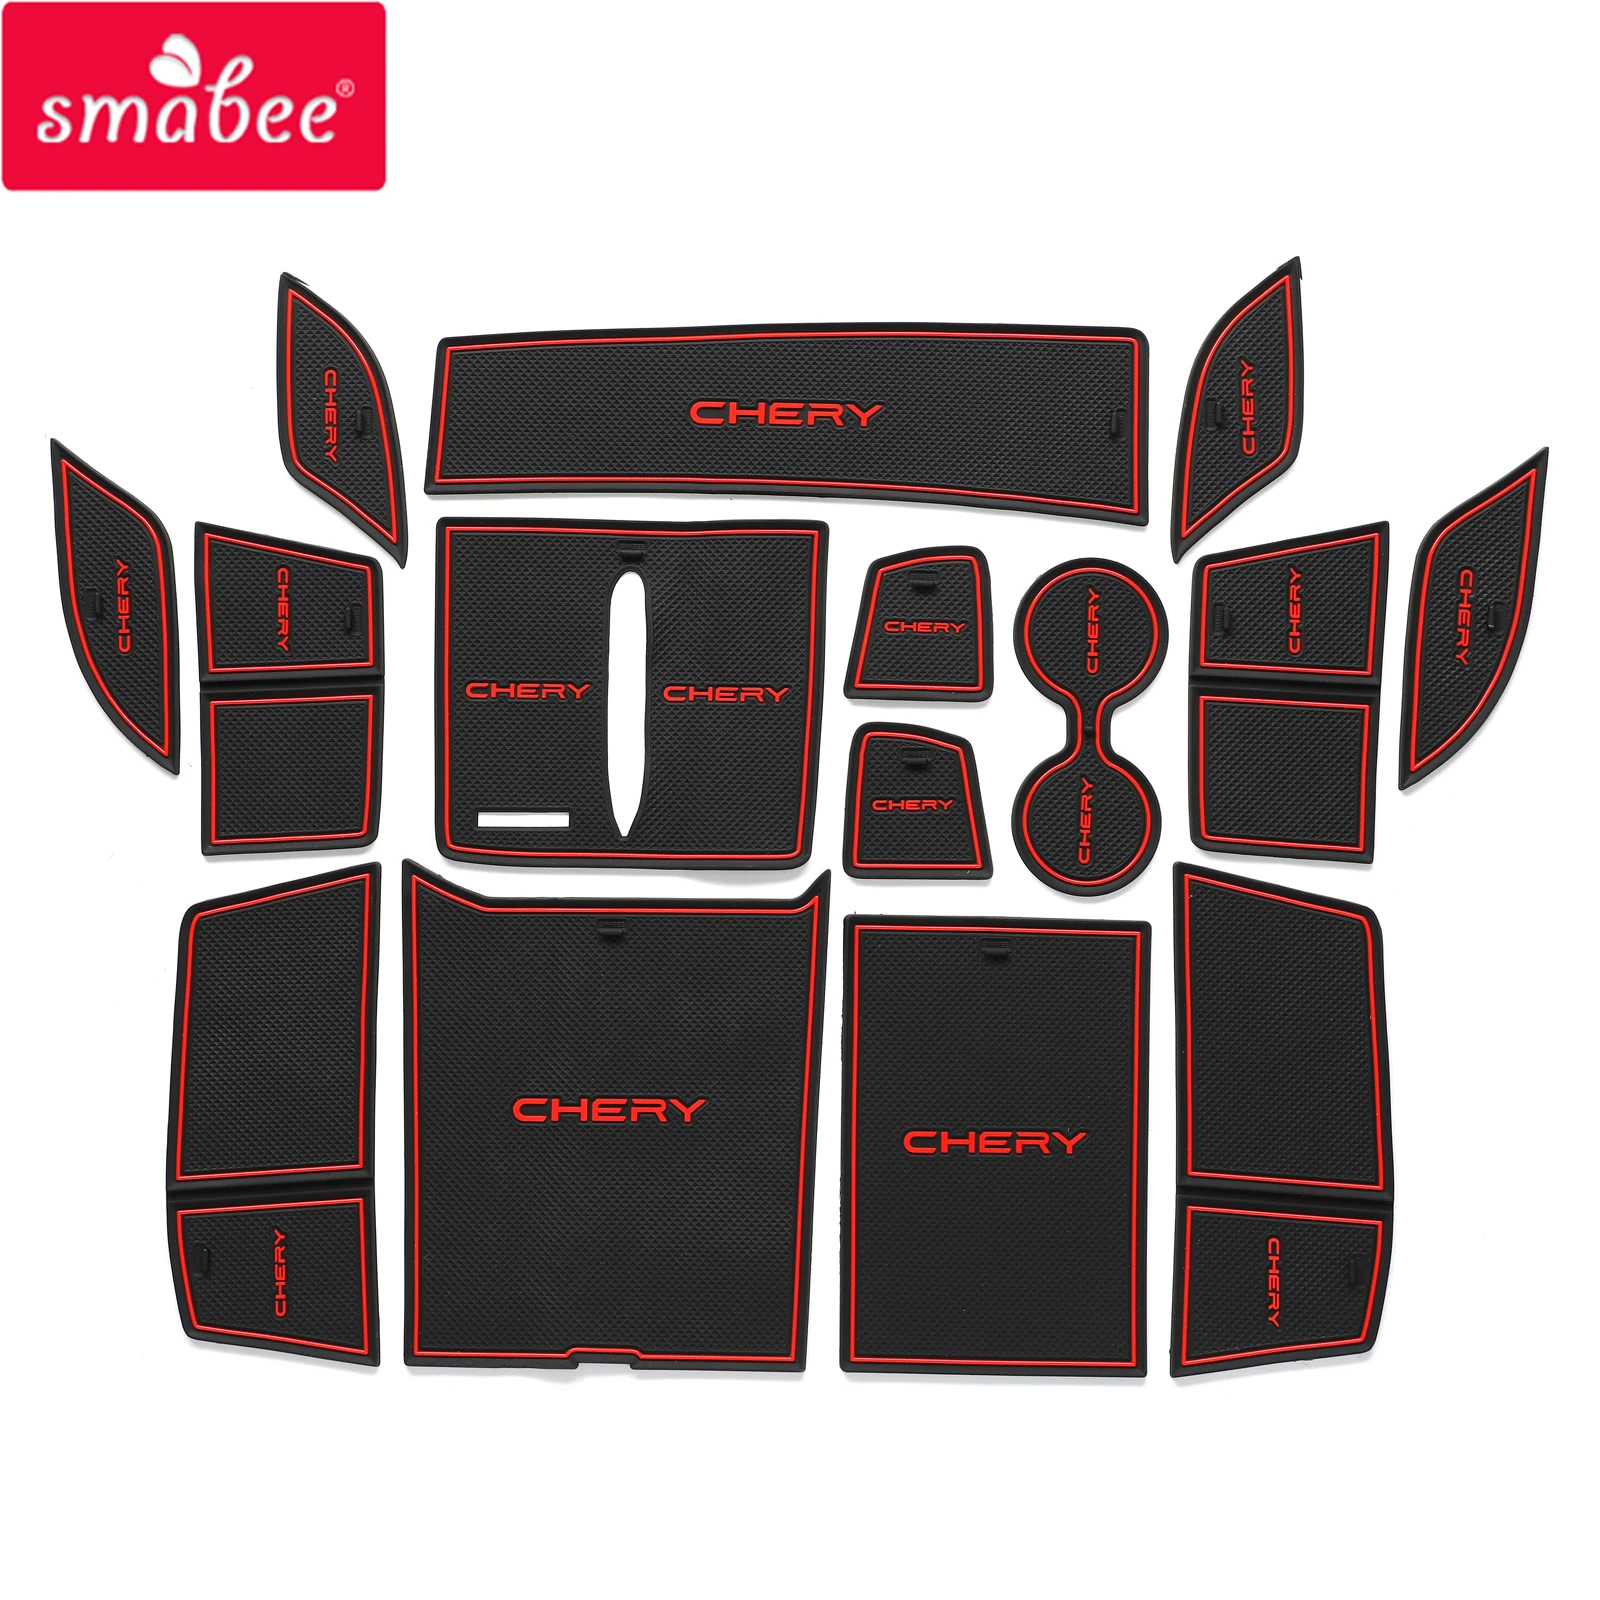 

Smabee Anti-Slip Gate Slot Cup Mat for Chery Tiggo 9 Non-Slip Door Groove Pad Interior Accessories Rubber Coaster RED WHITE BLUE